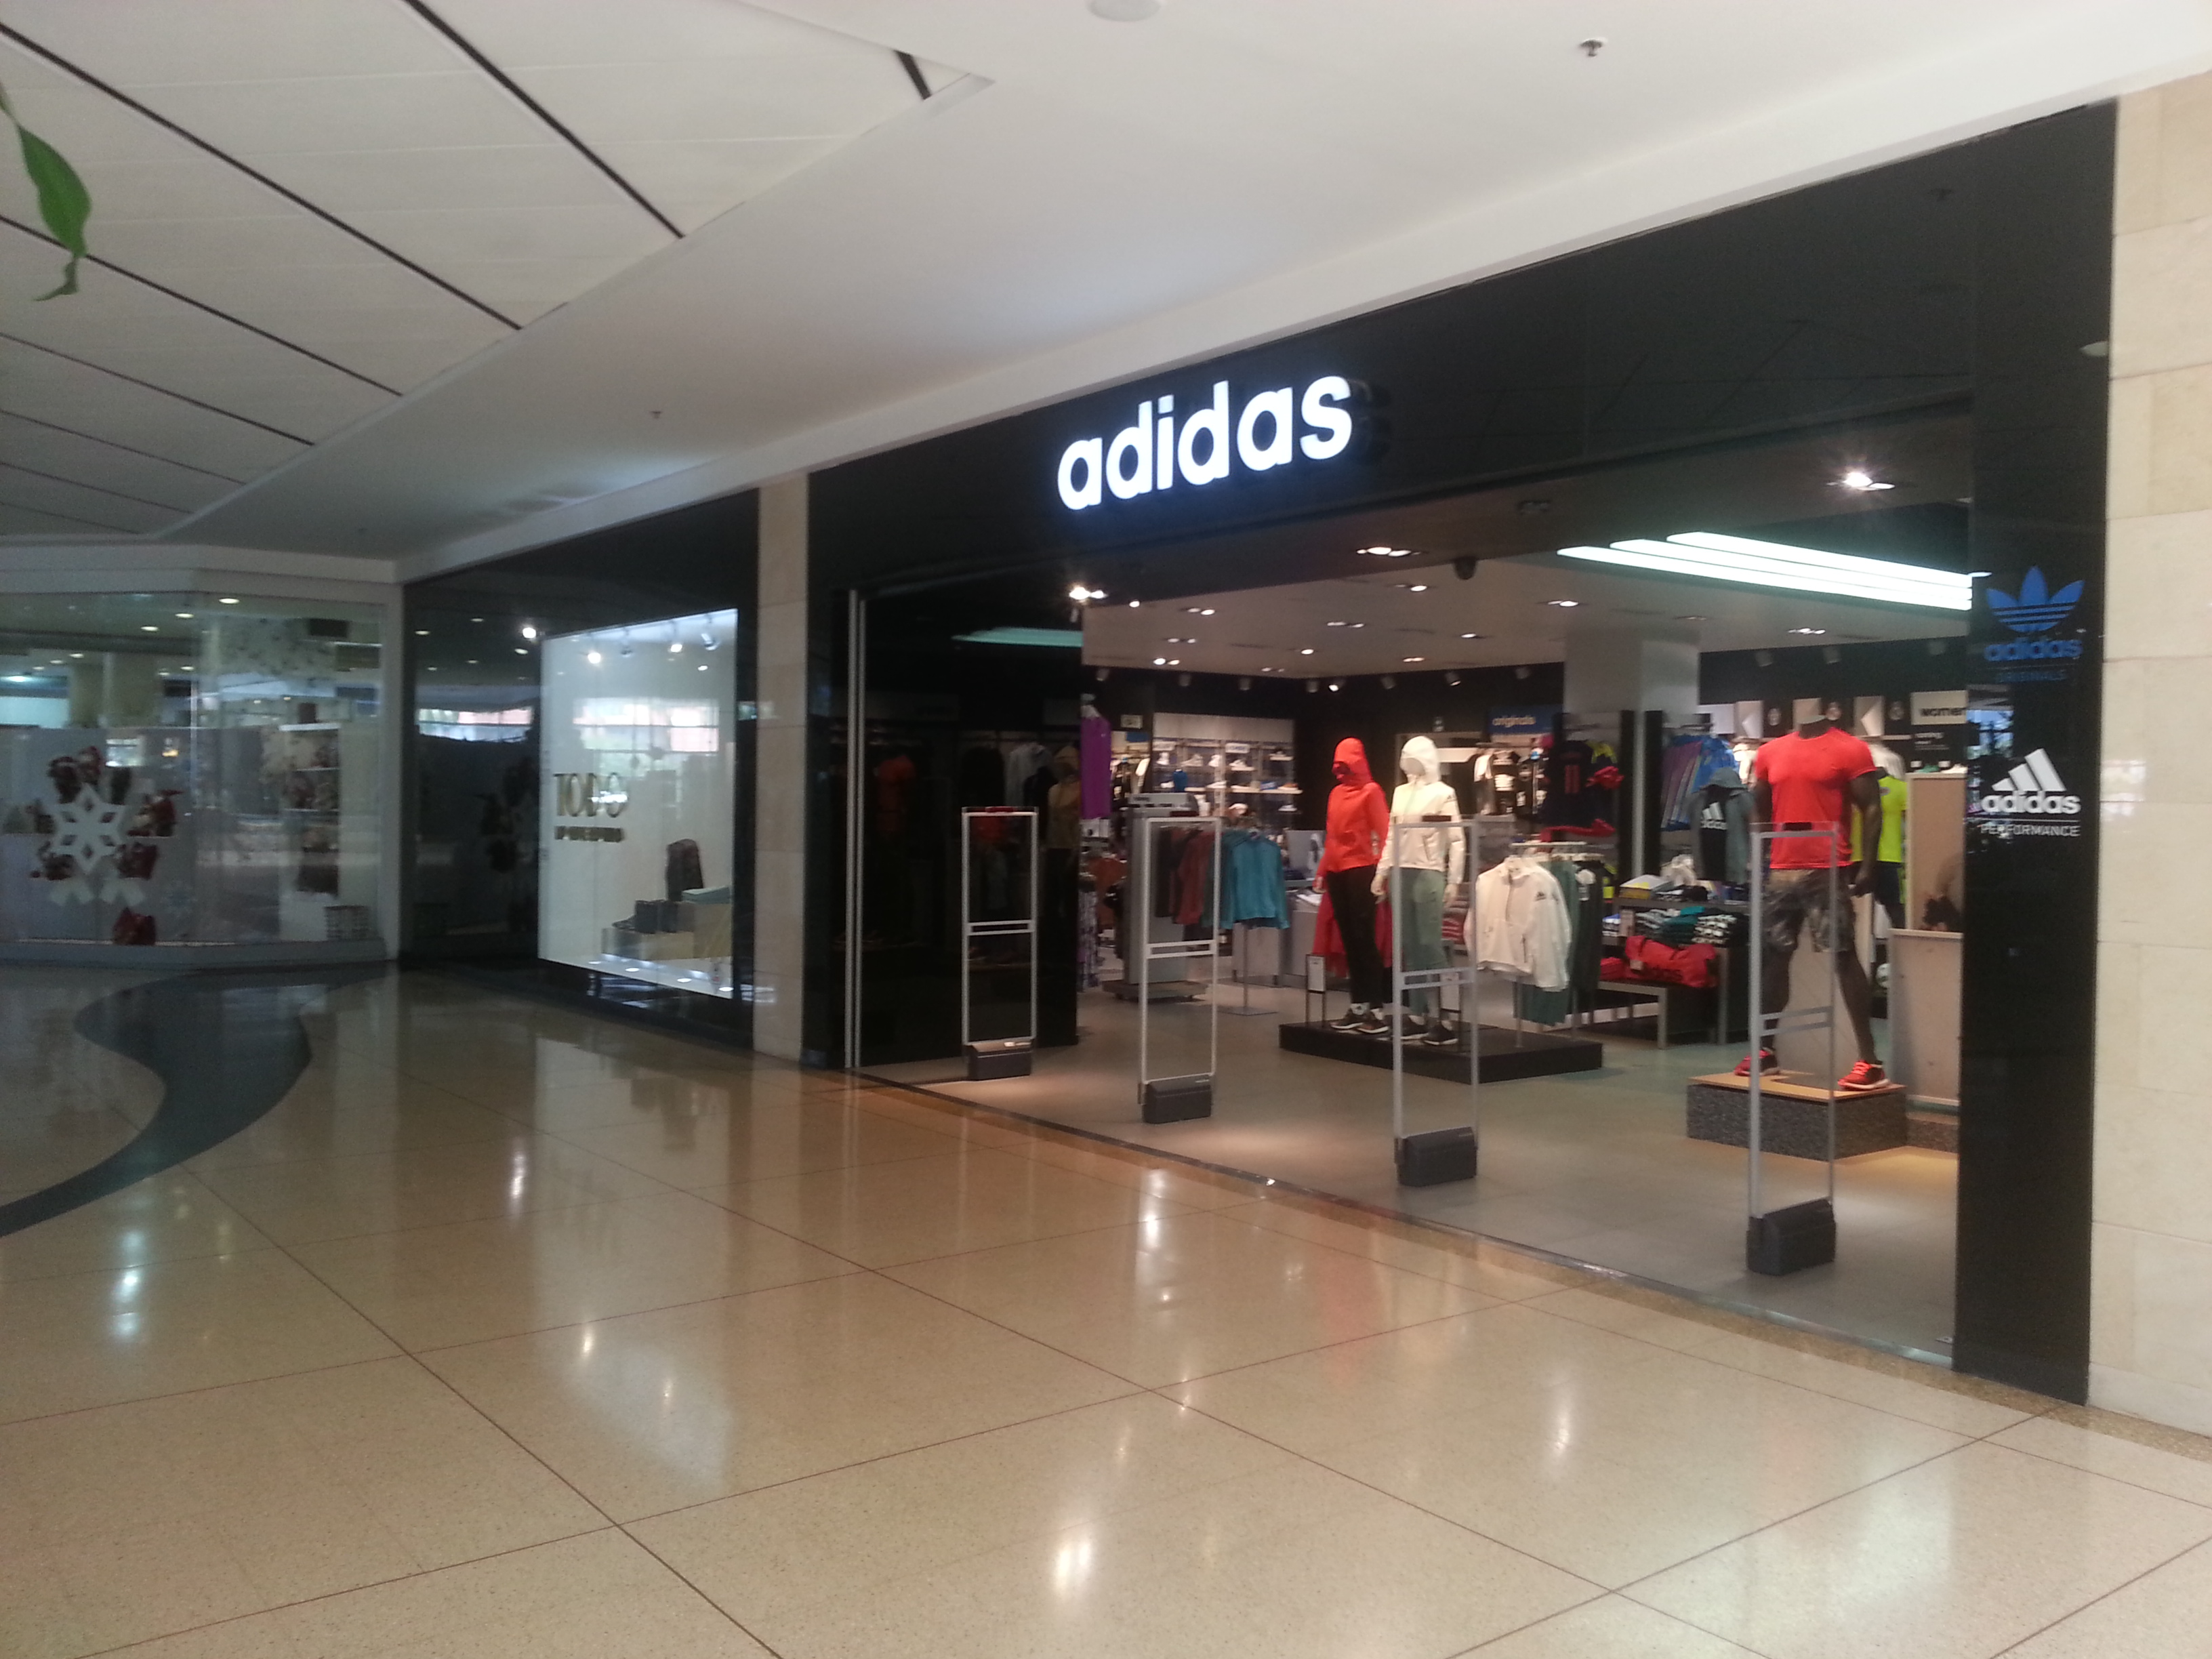 A non-festive Adidas shop in Bogotá, Colombia.